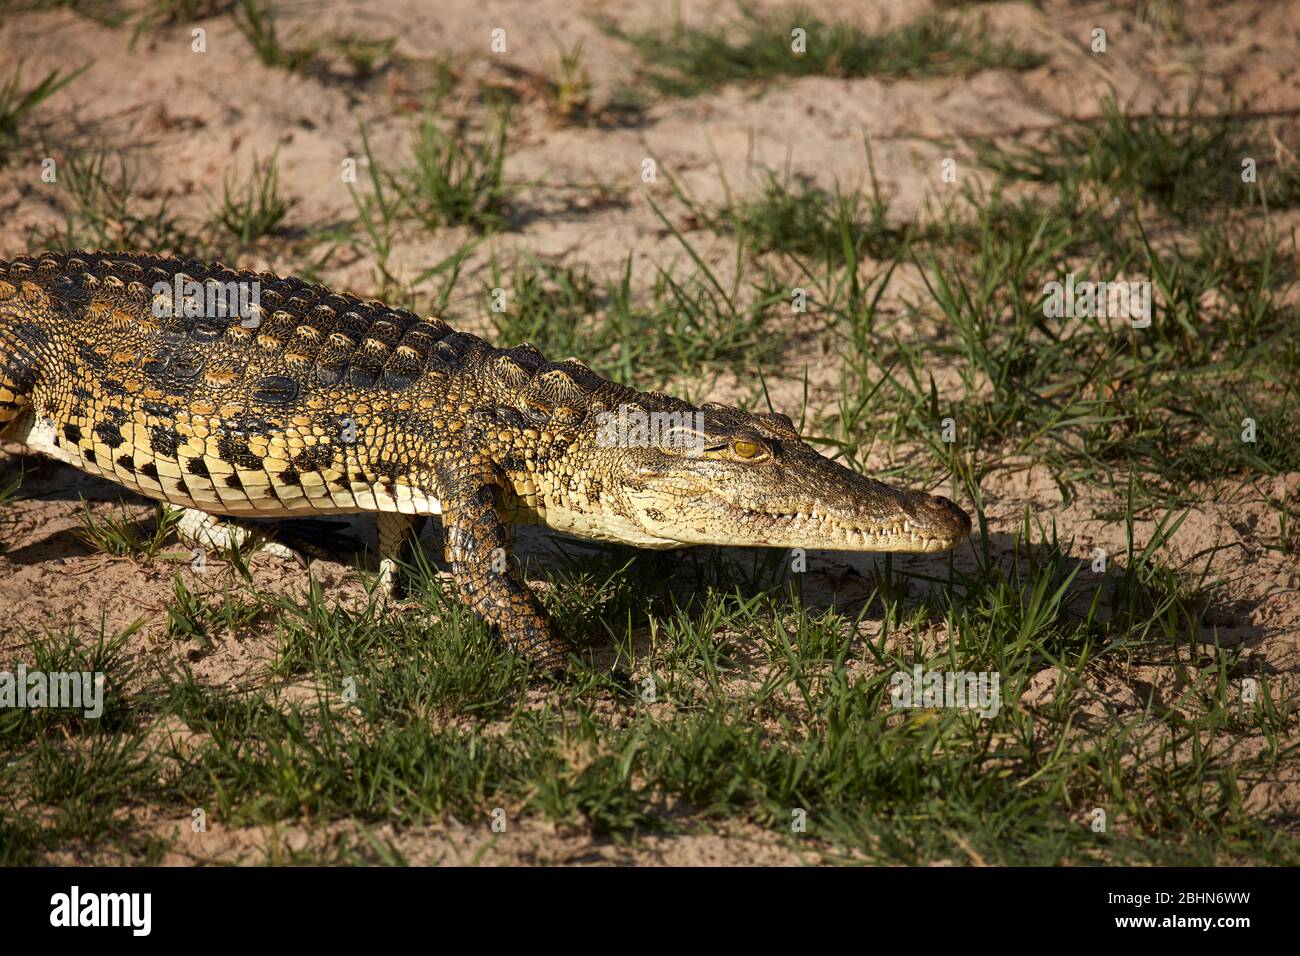 Crocodile by Zambezi River, near Victoria Falls, Zimbabwe, Africa Stock Photo